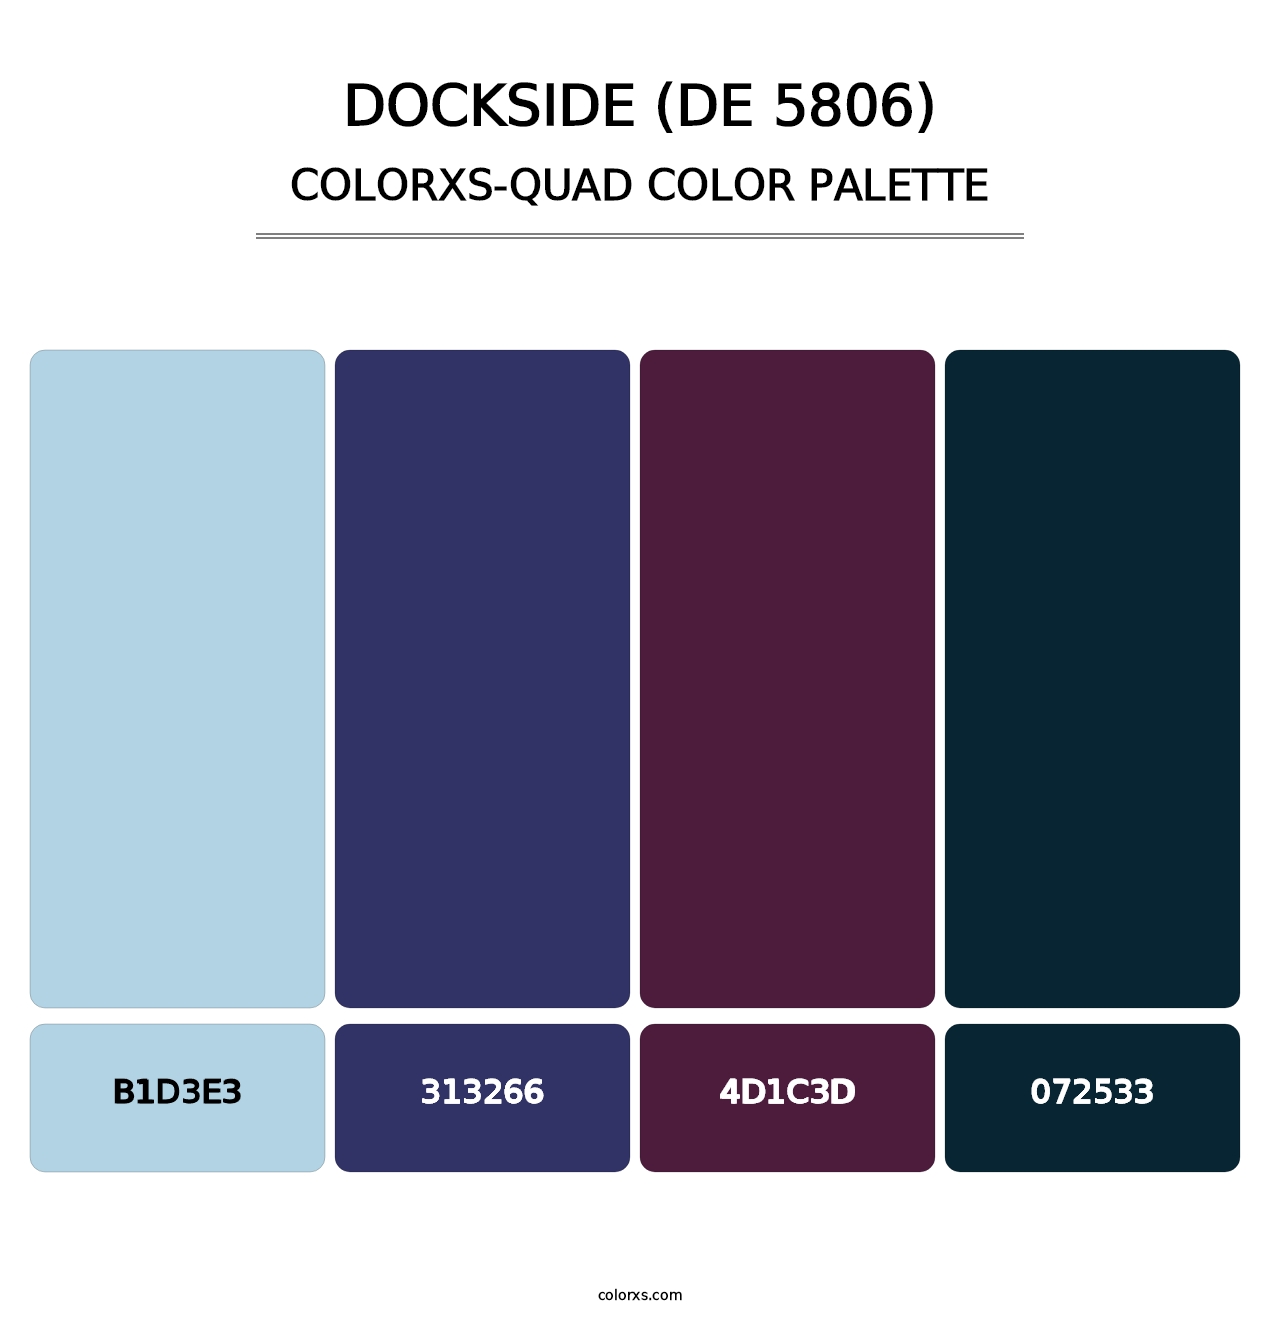 Dockside (DE 5806) - Colorxs Quad Palette